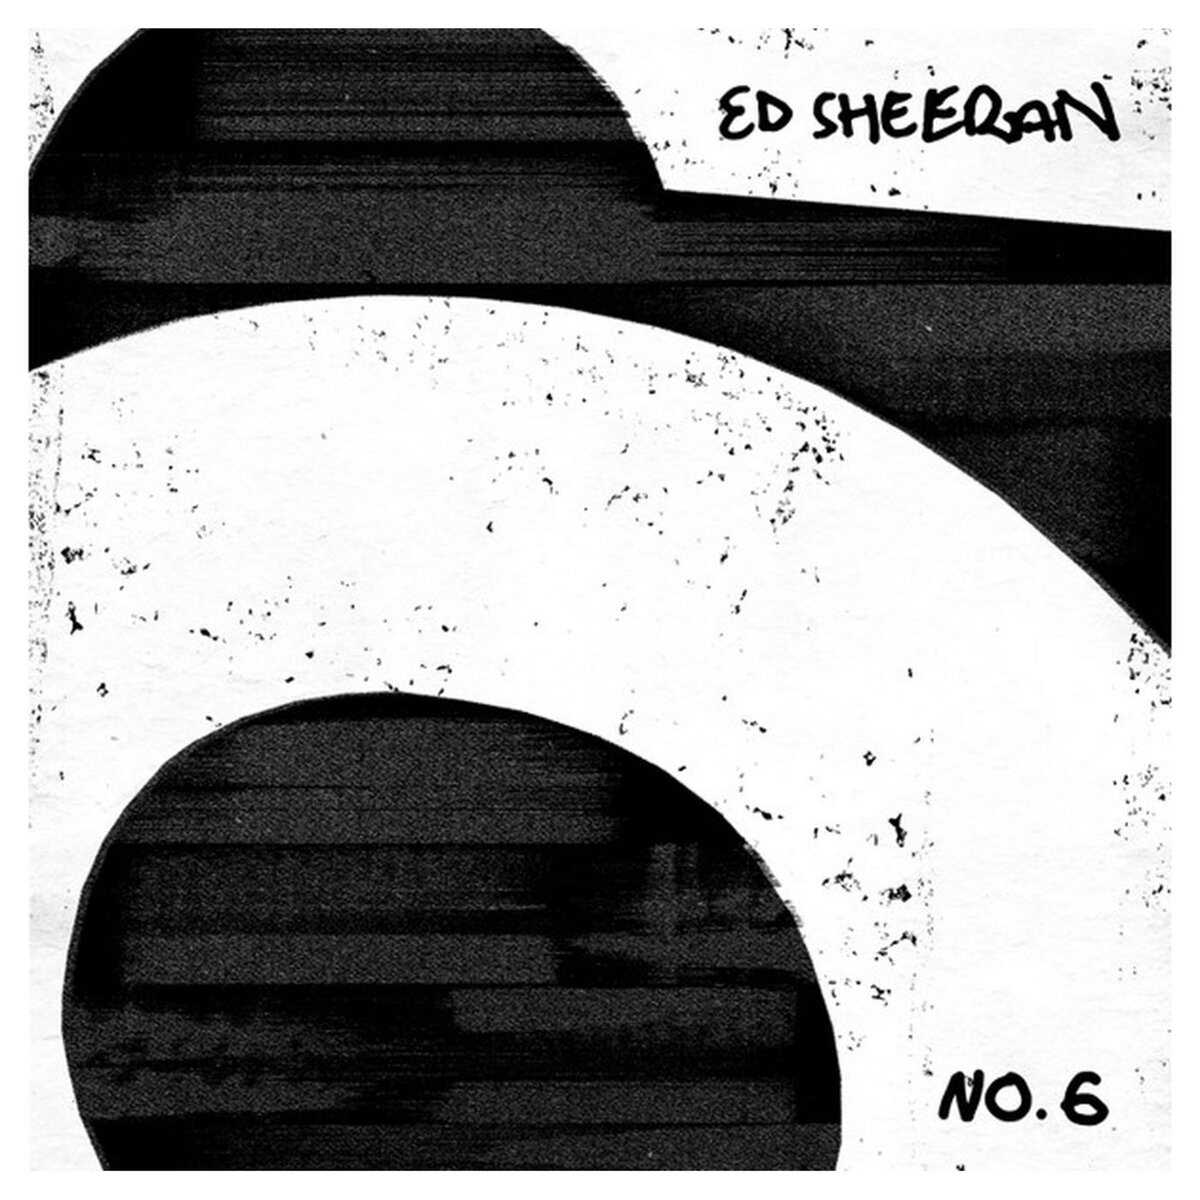 Ed Sheeran - No.6 collaborations project CD